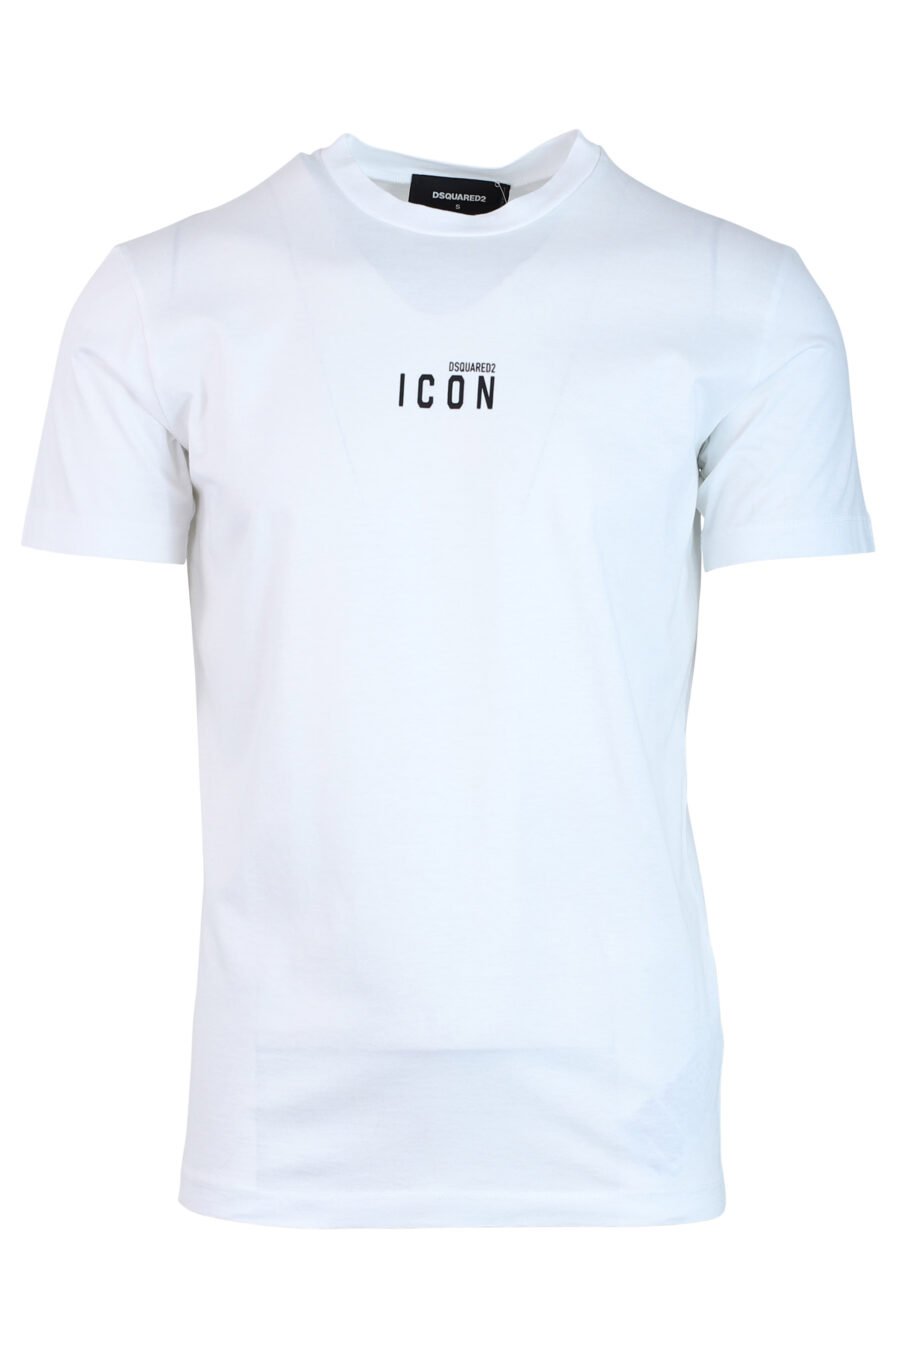 T-shirt branca com "ícone" minilogue - IMG 0719